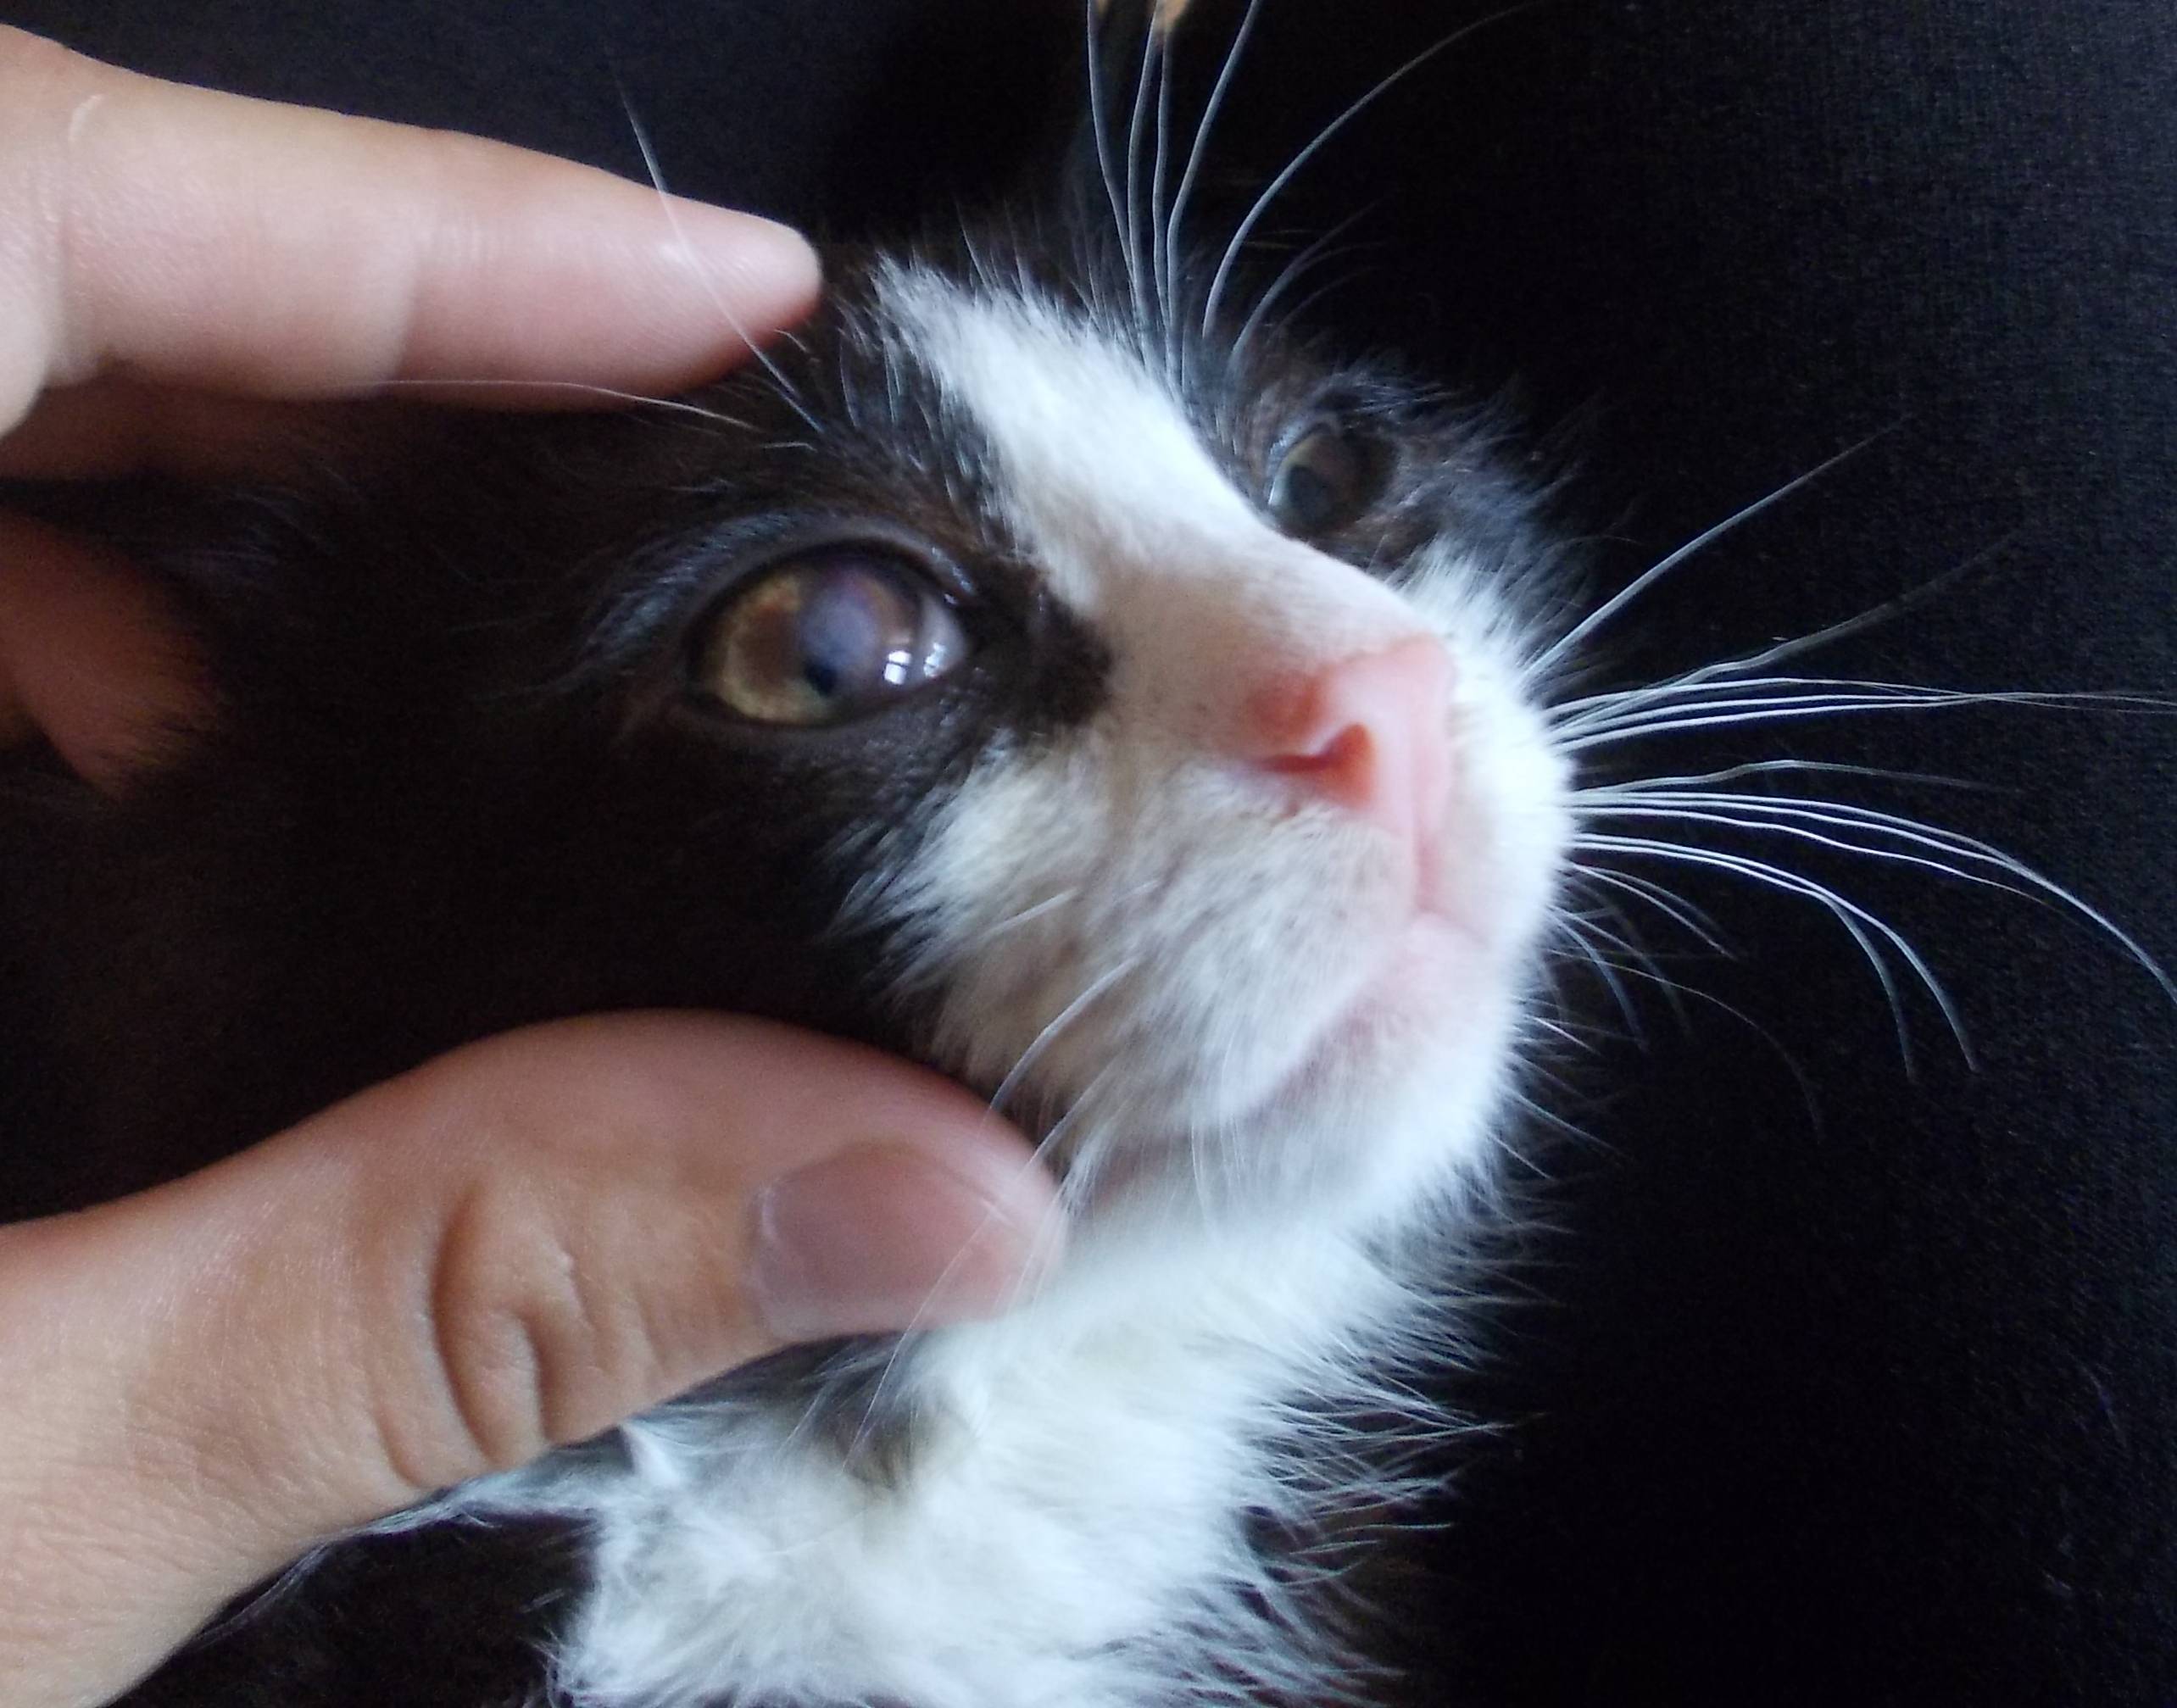 Третье веко у кошки закрывает глаз на половину: причины, как лечить